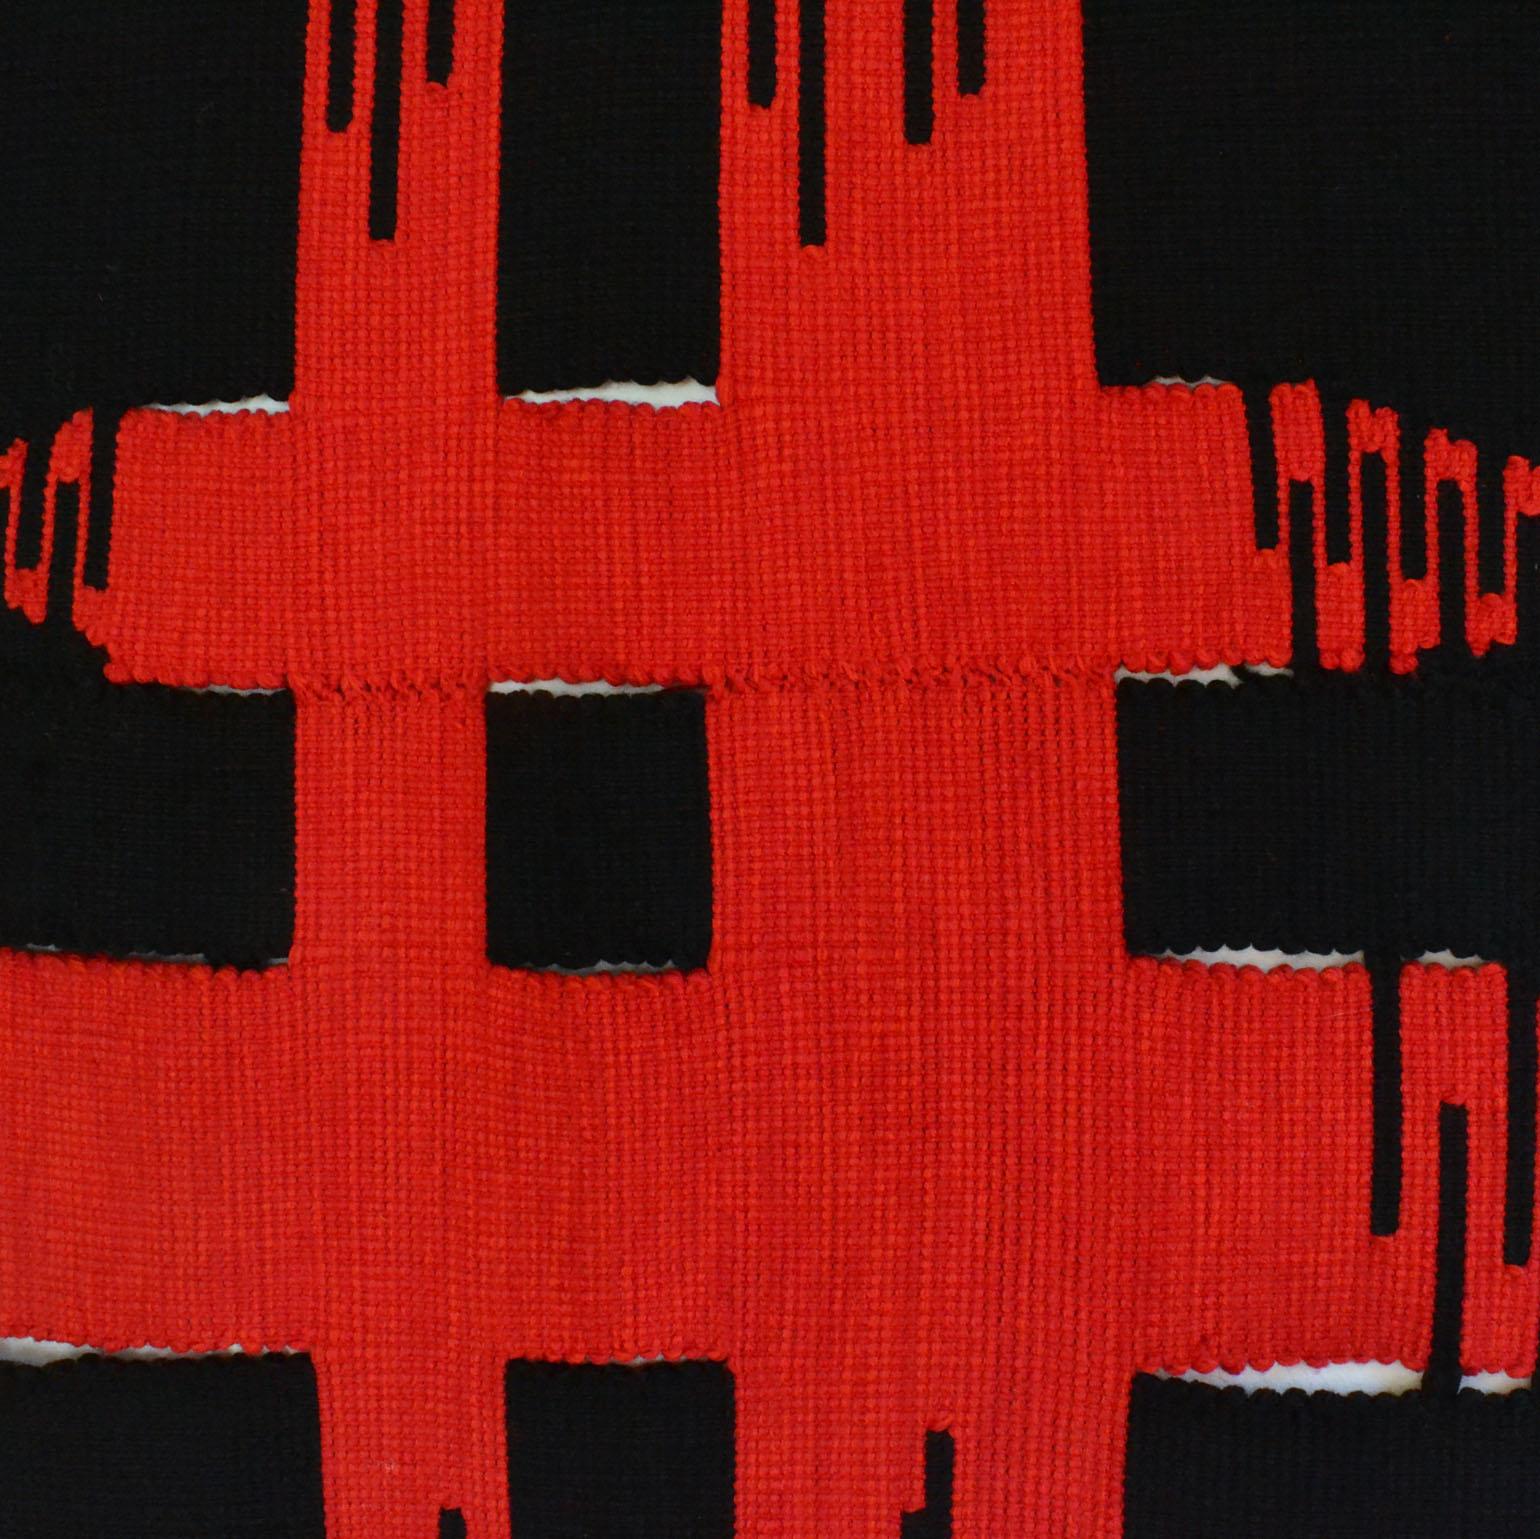 Tapisserie moderne d'art abstrait tissée à la main par l'artiste néerlandaise Liesbeth Wiersma en rouge et noir 1969 a été tissée traditionnellement en laine à la main sur un métier à tisser selon une technique appelée Kelim. L'artiste explore les